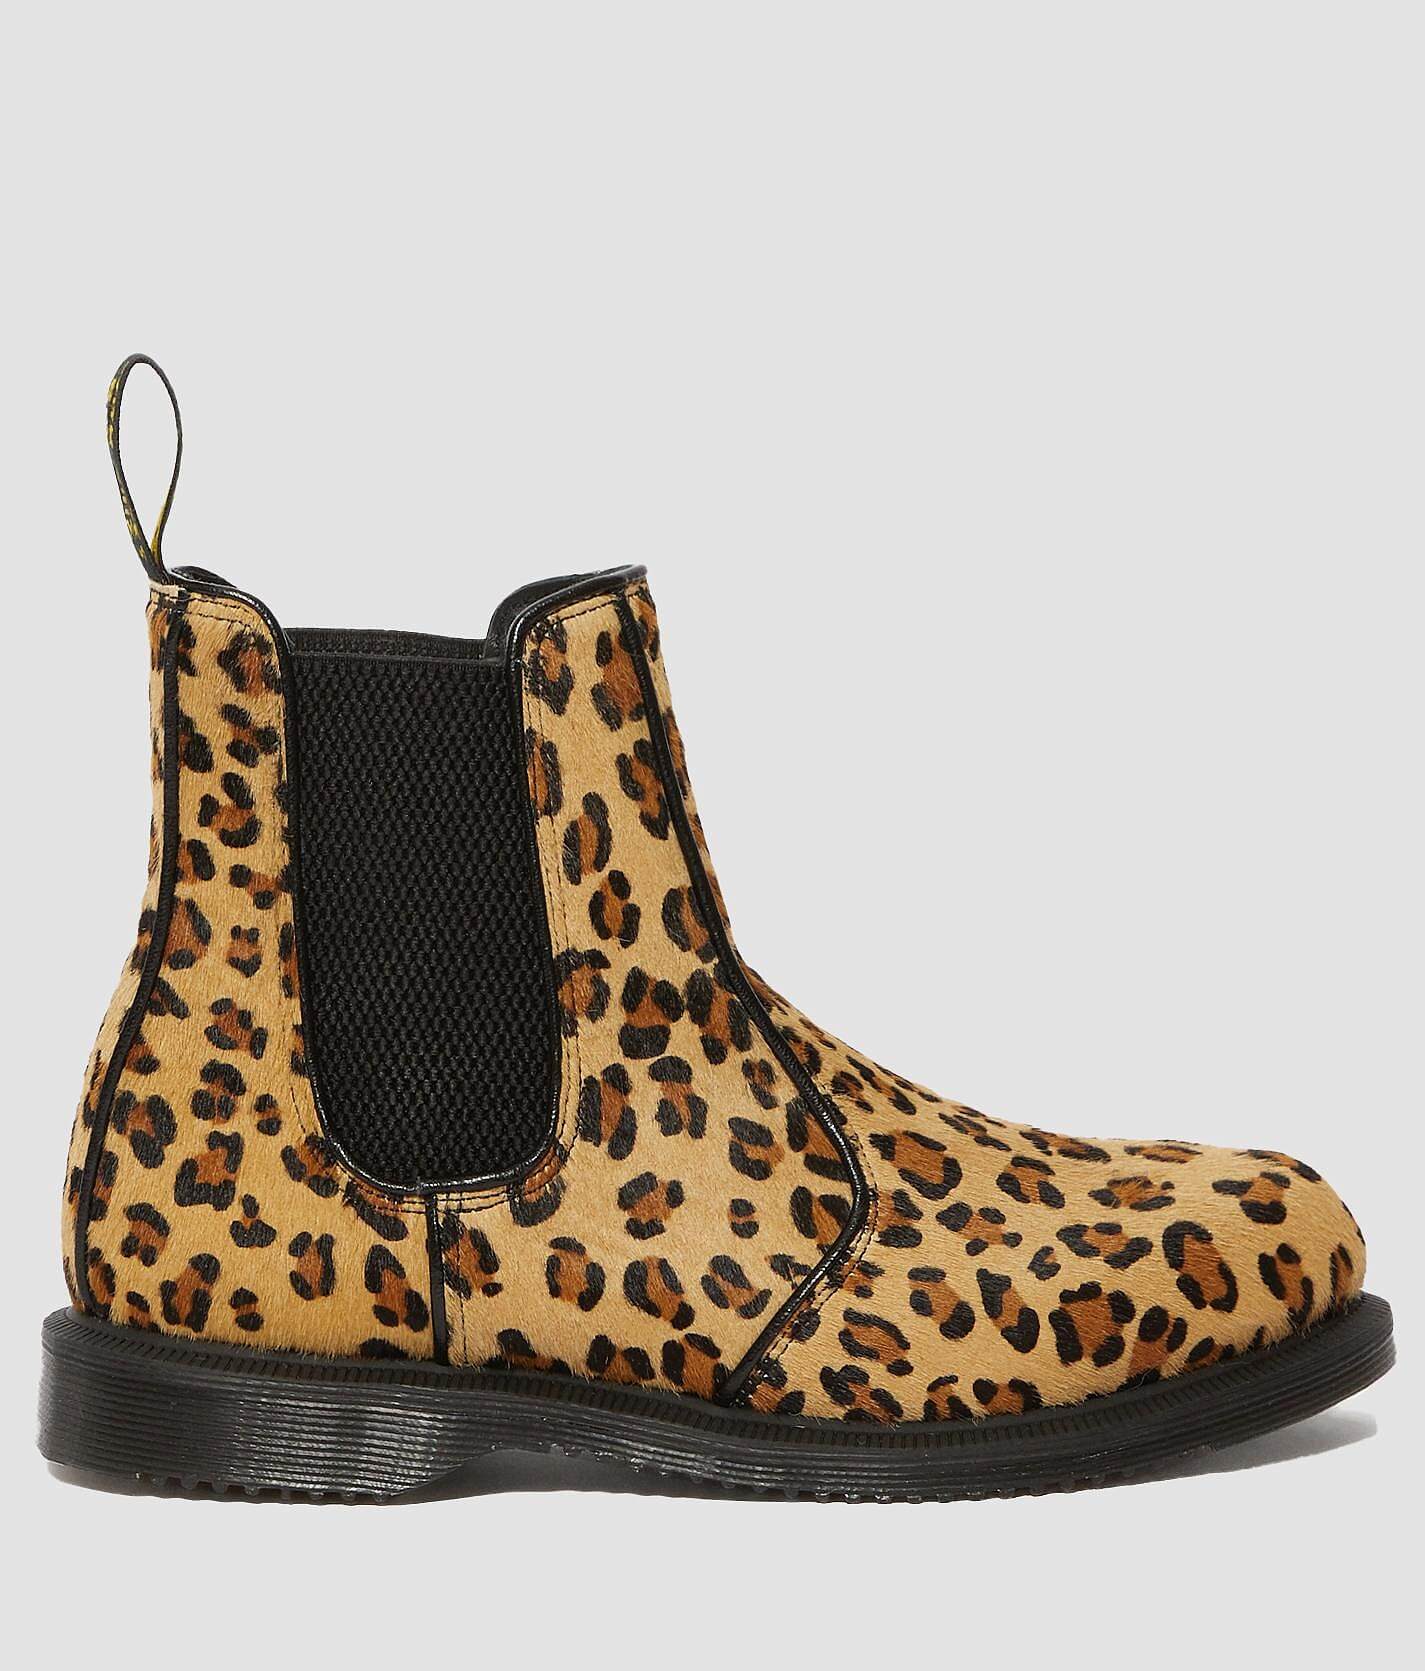 leopard print dr martens shoes